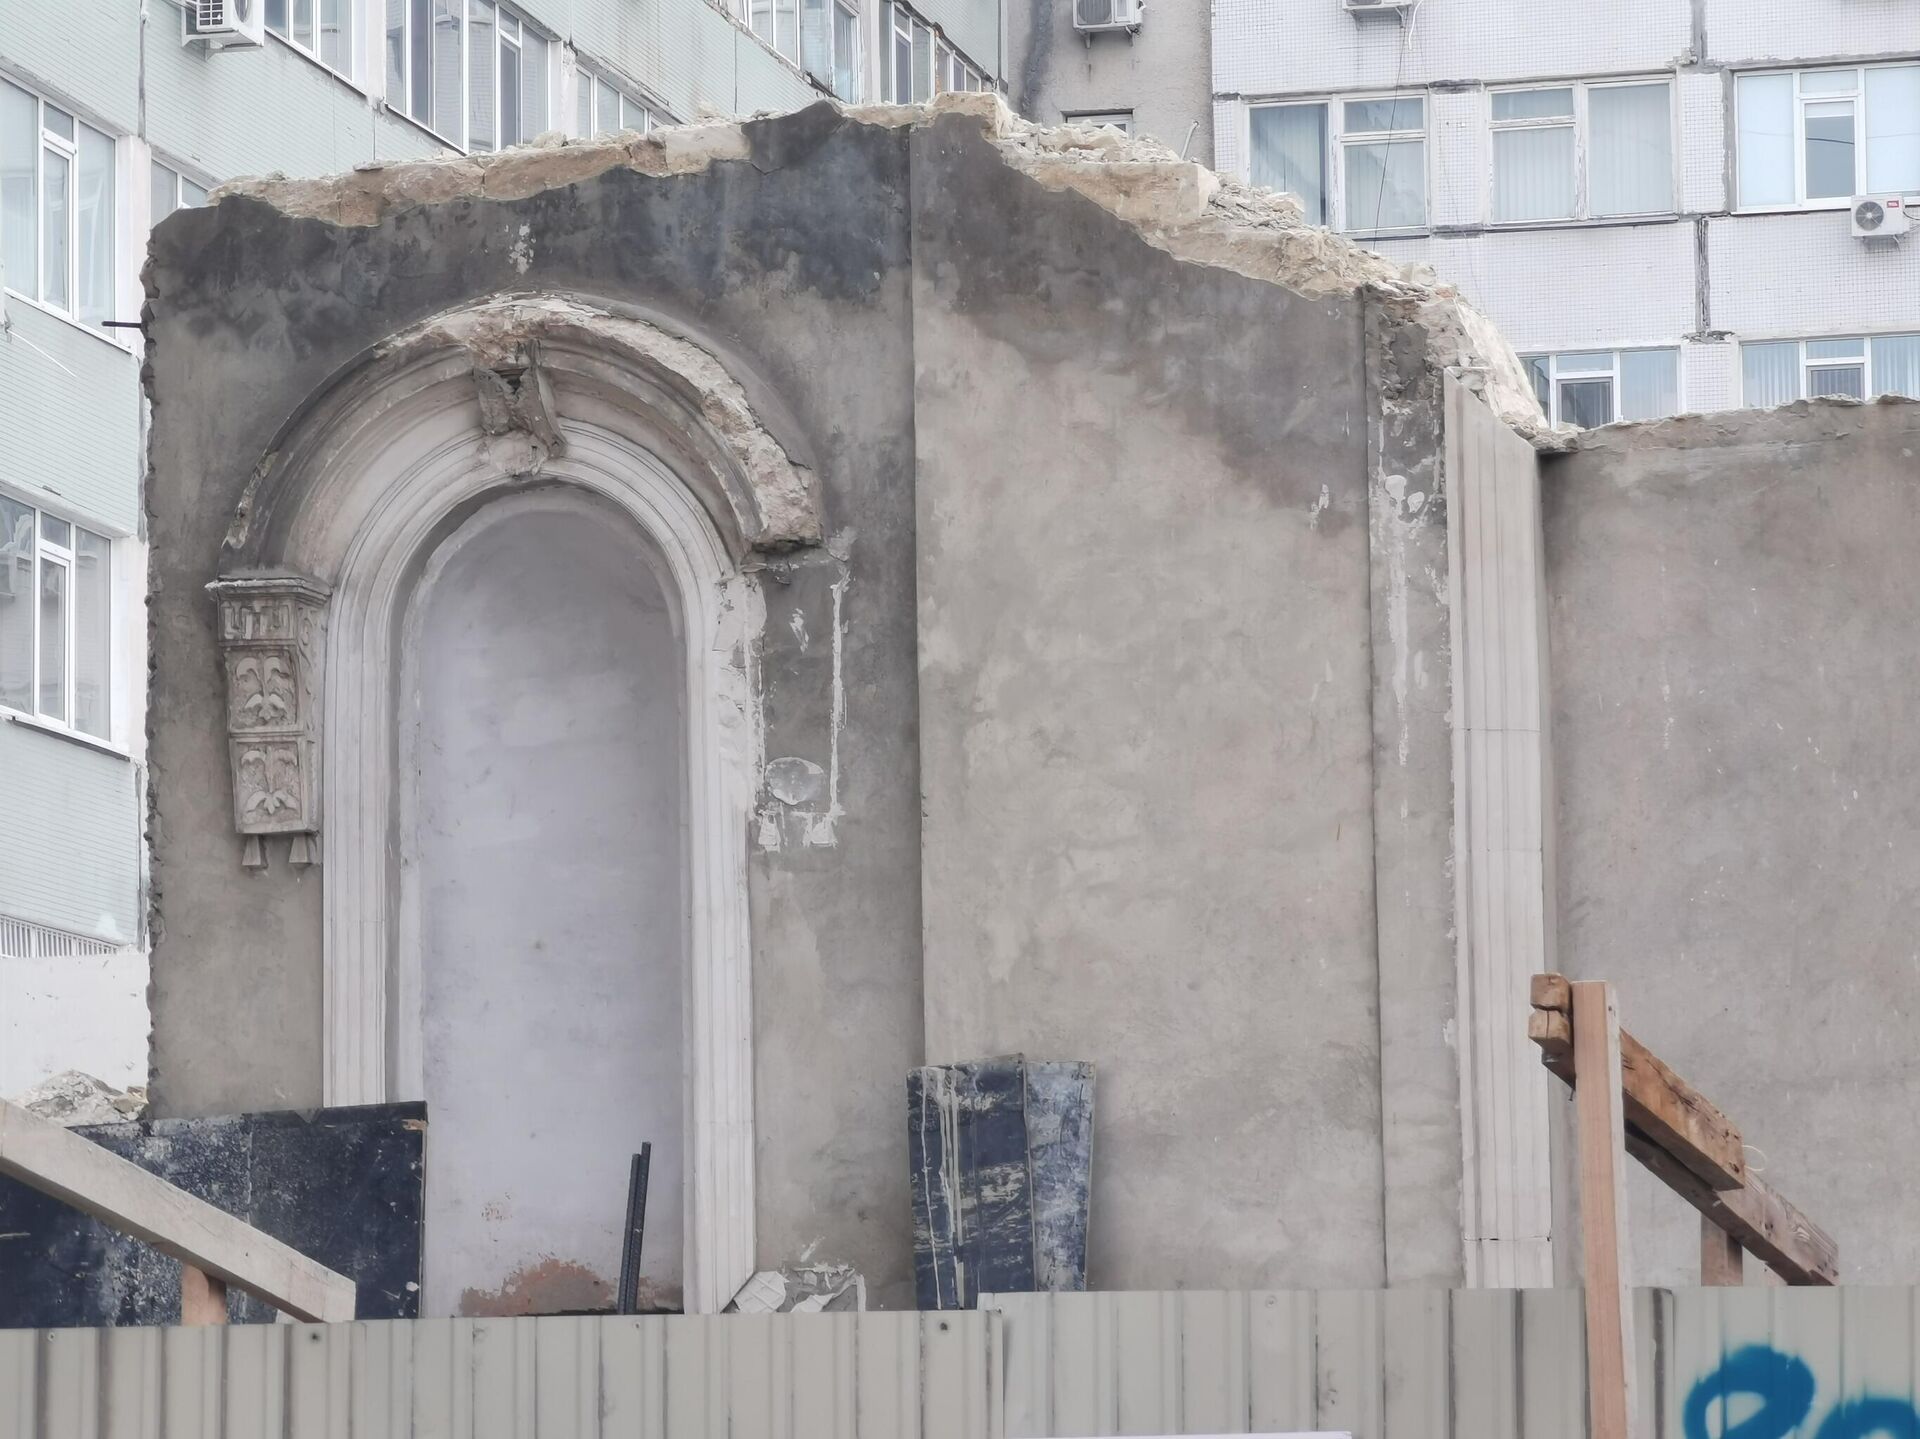 руины здание на улице 31 августа 157, Кишинев - Sputnik Молдова, 1920, 24.10.2021